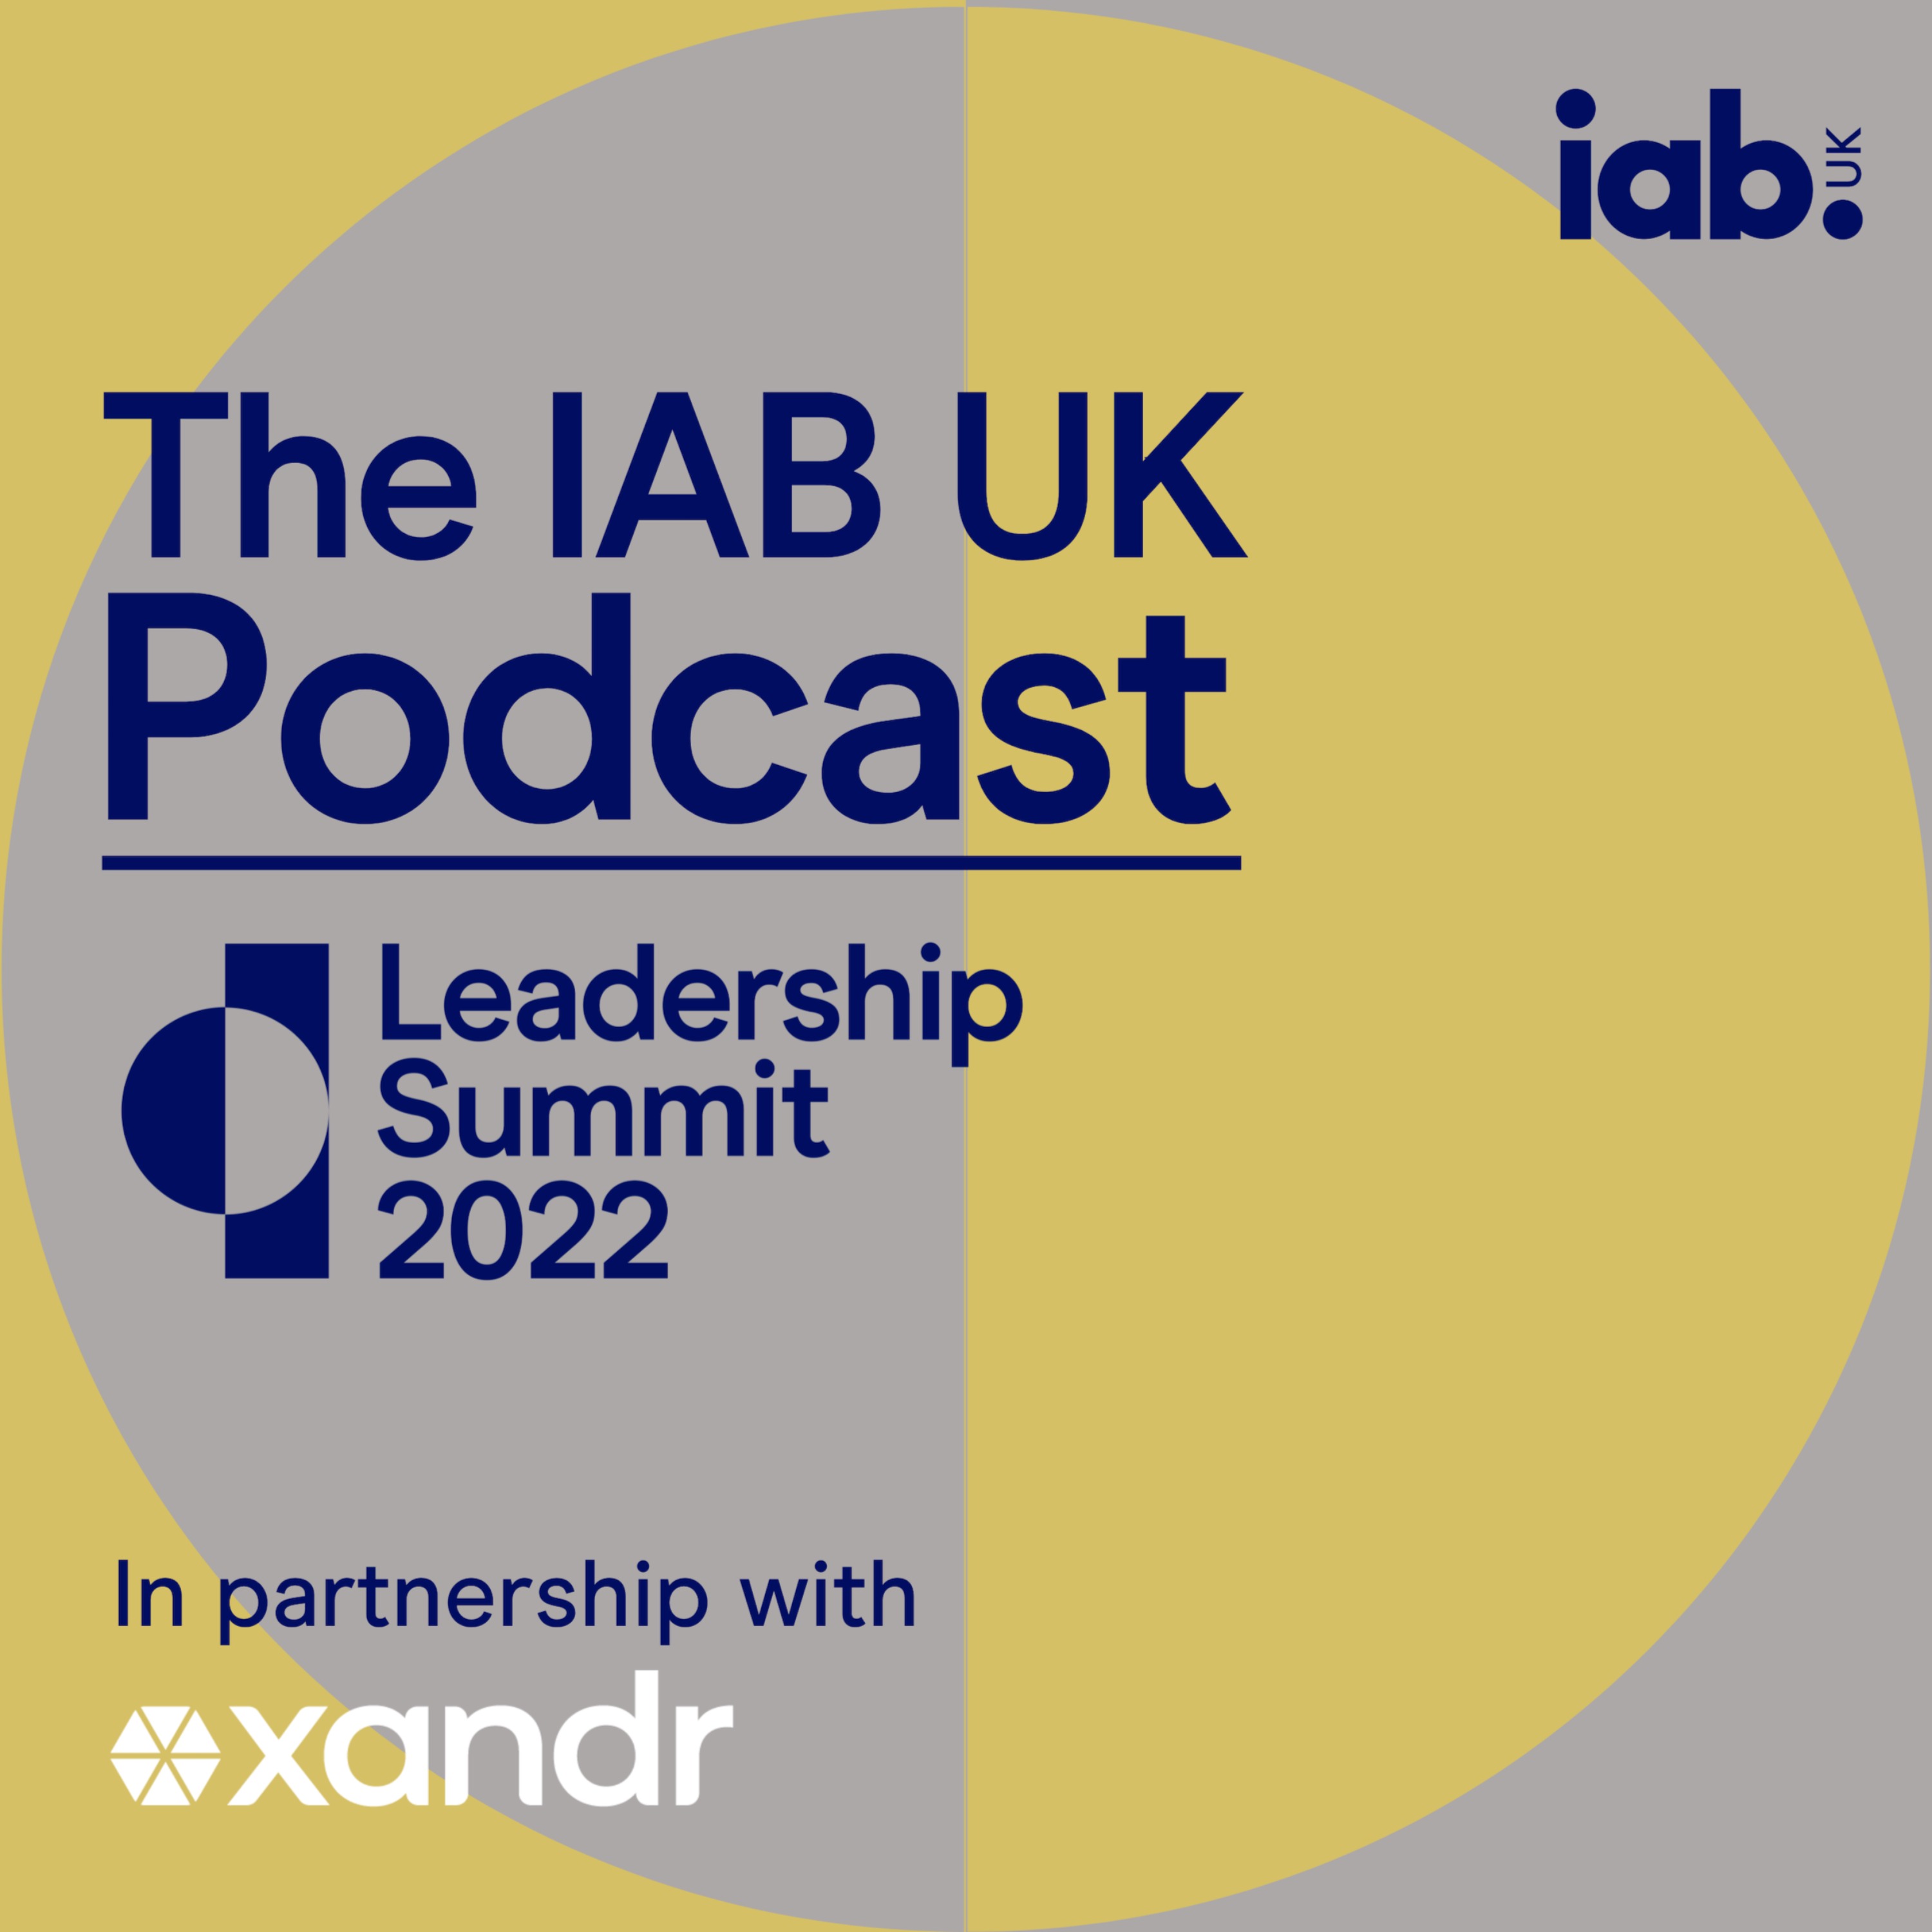 IAB UK Leadership Summit 2022 Special The IAB UK Podcast on Acast